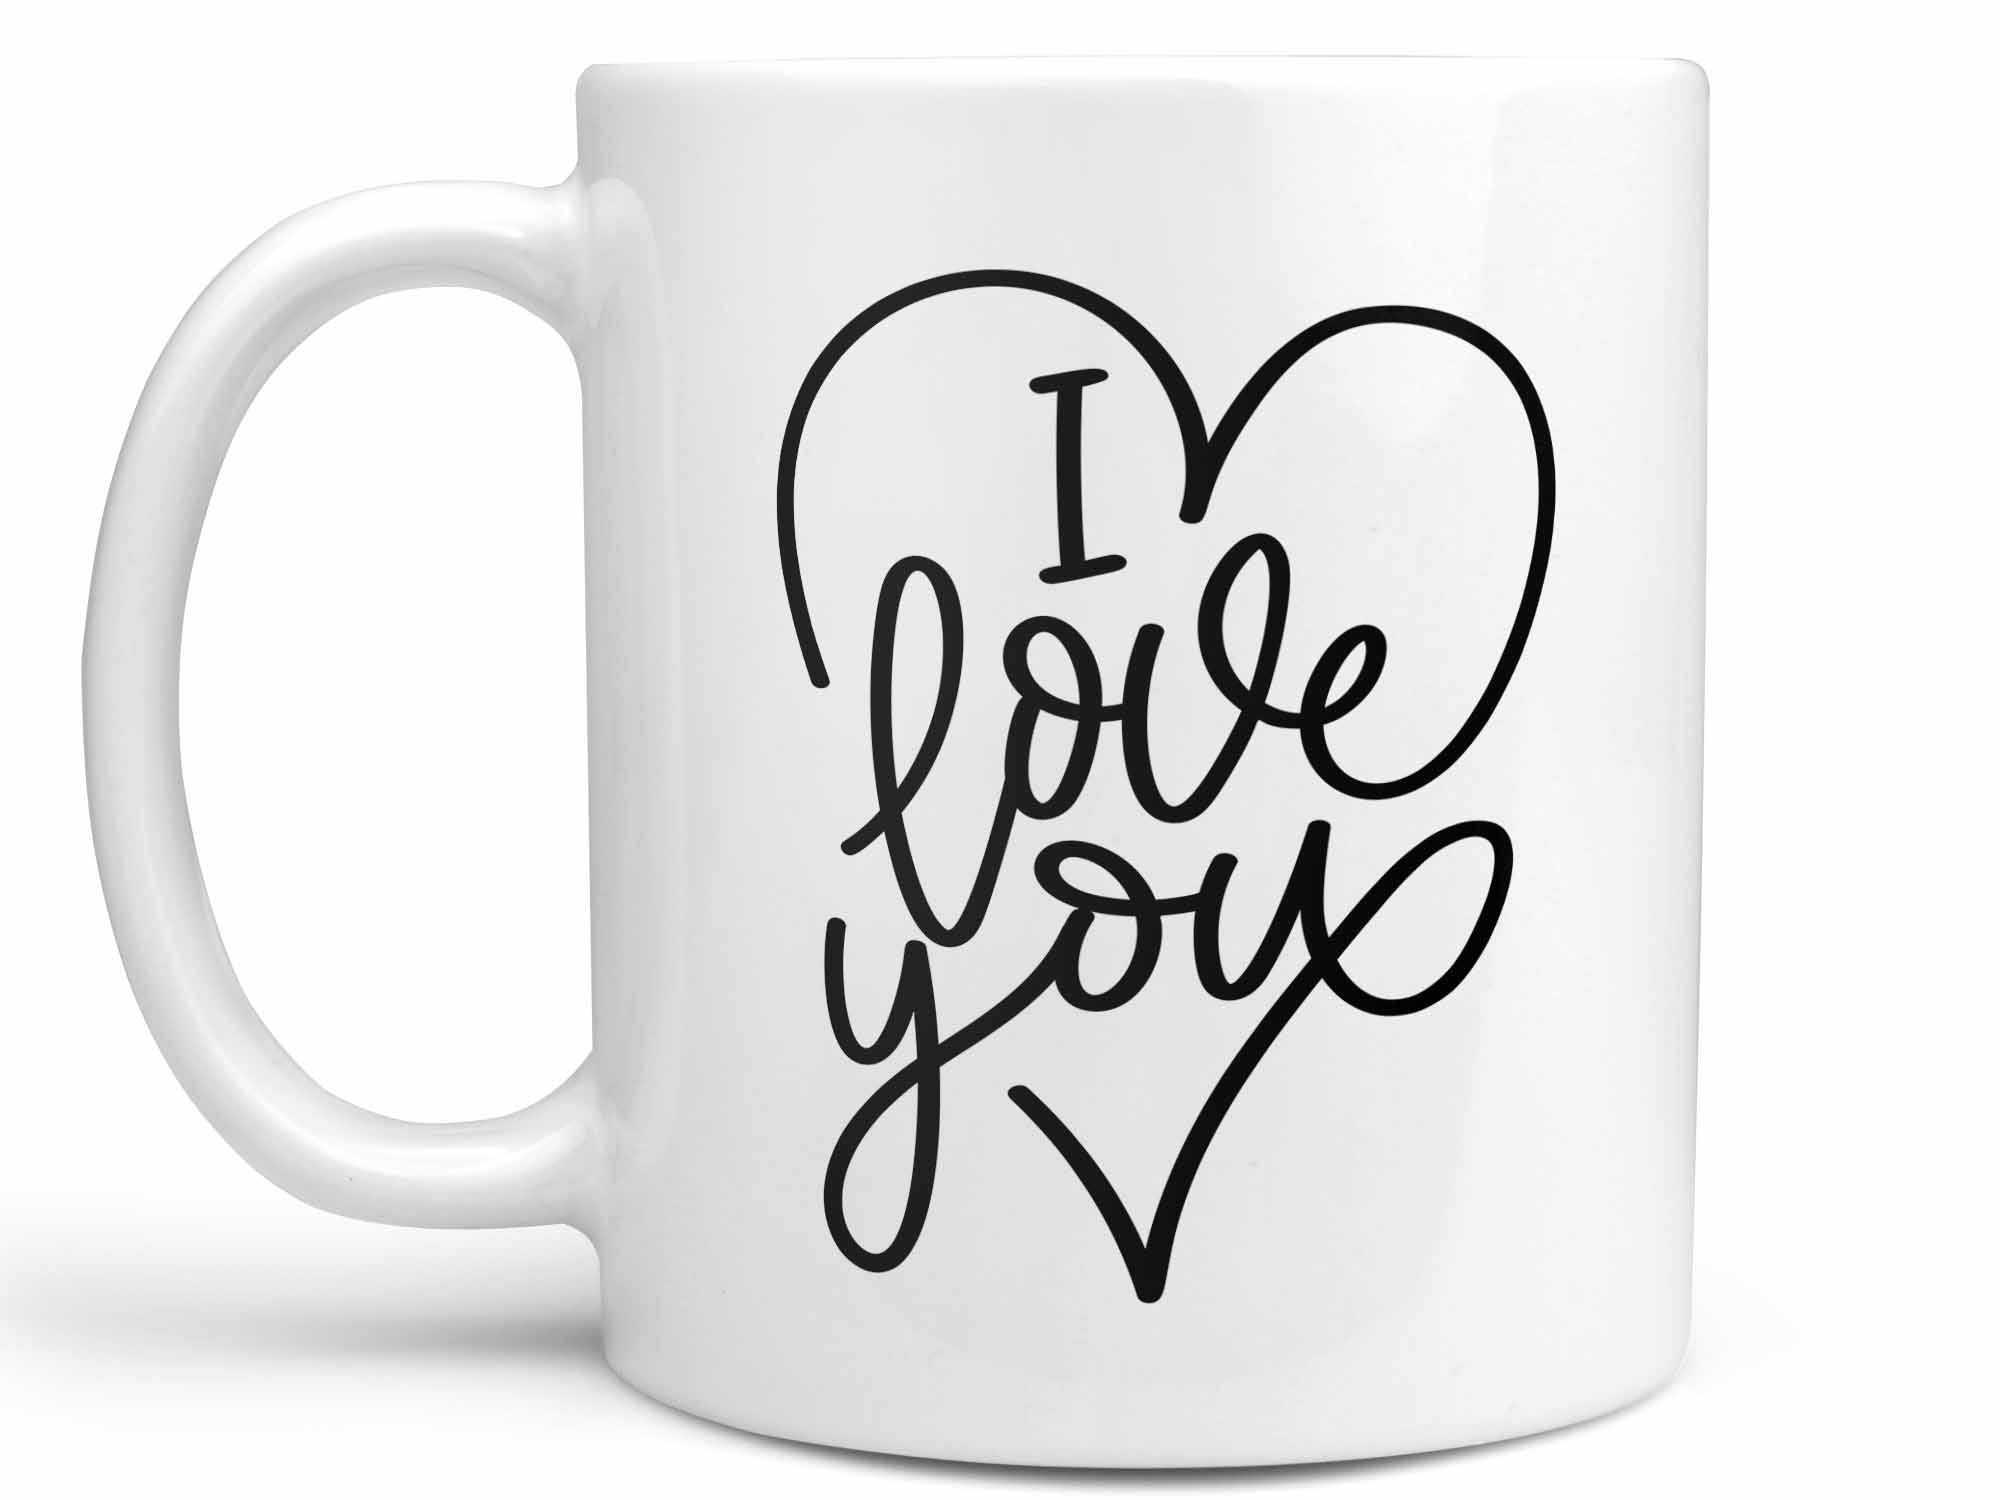 I Love You Coffee Mug